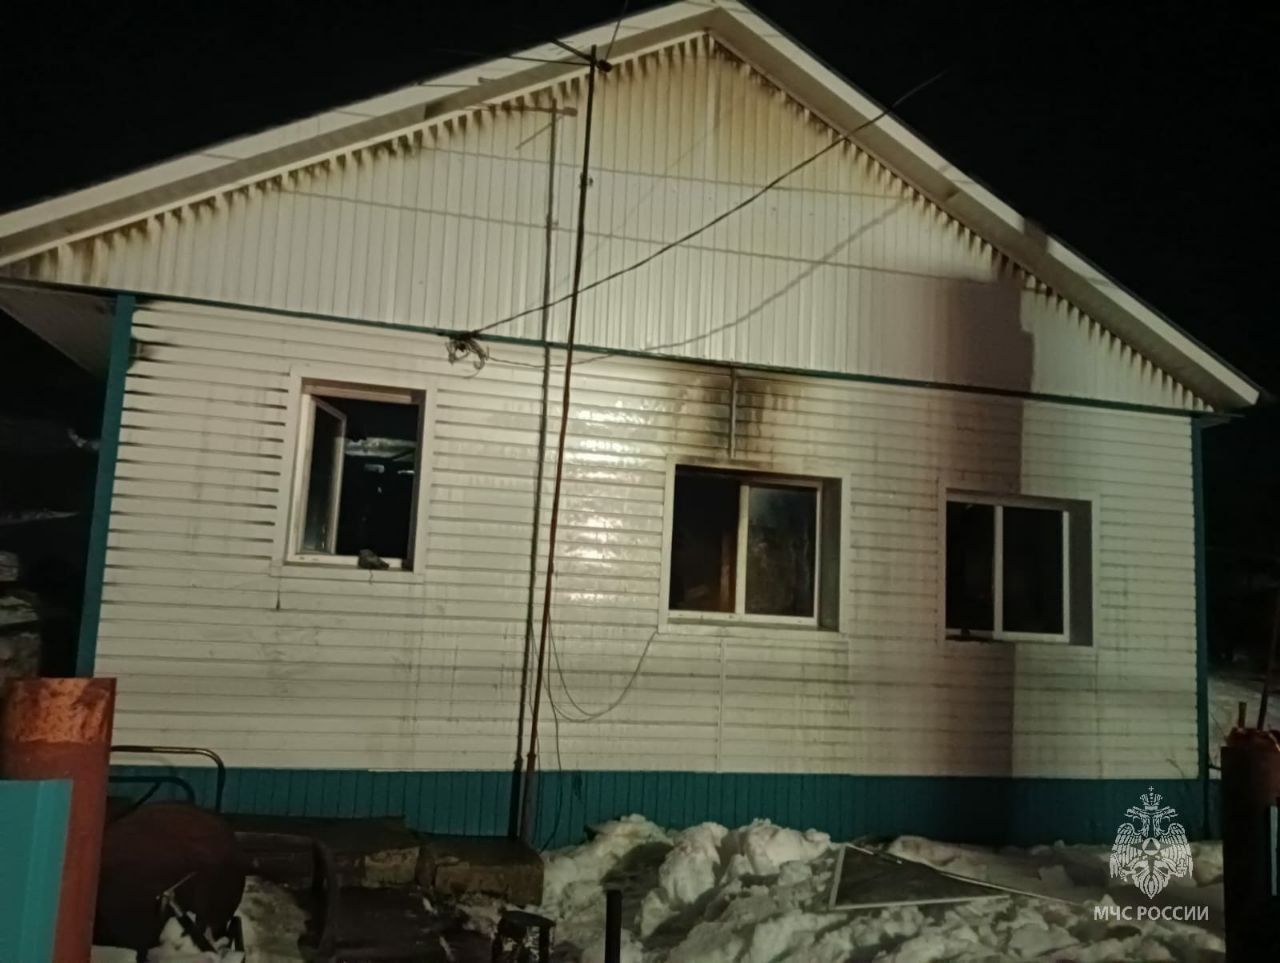 Пожар в частном доме в РТ унес жизни двух человек из-за неосторожности при курении